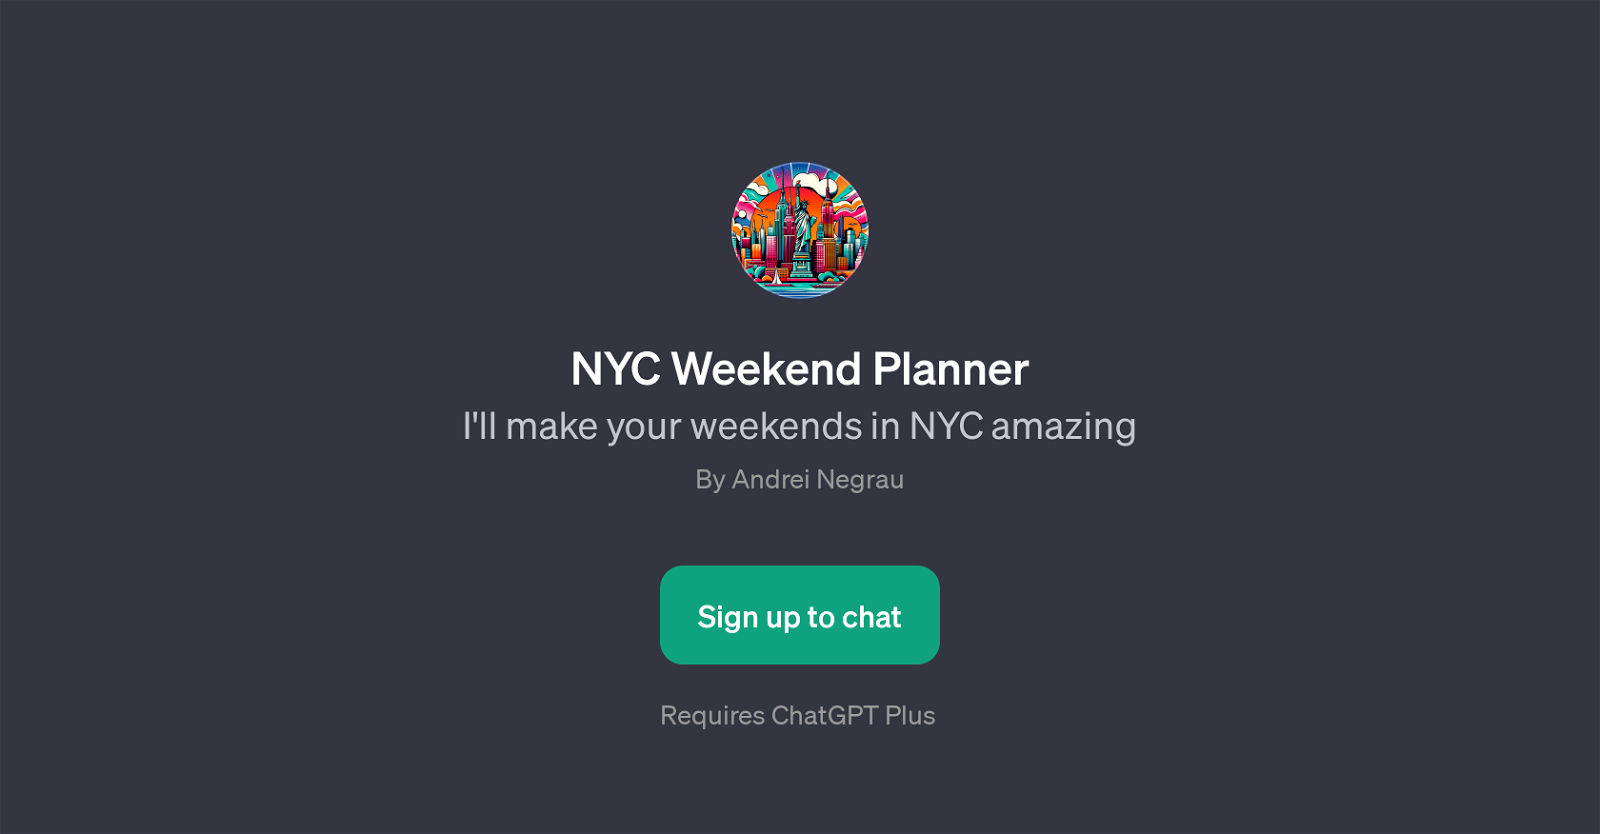 NYC Weekend Planner website